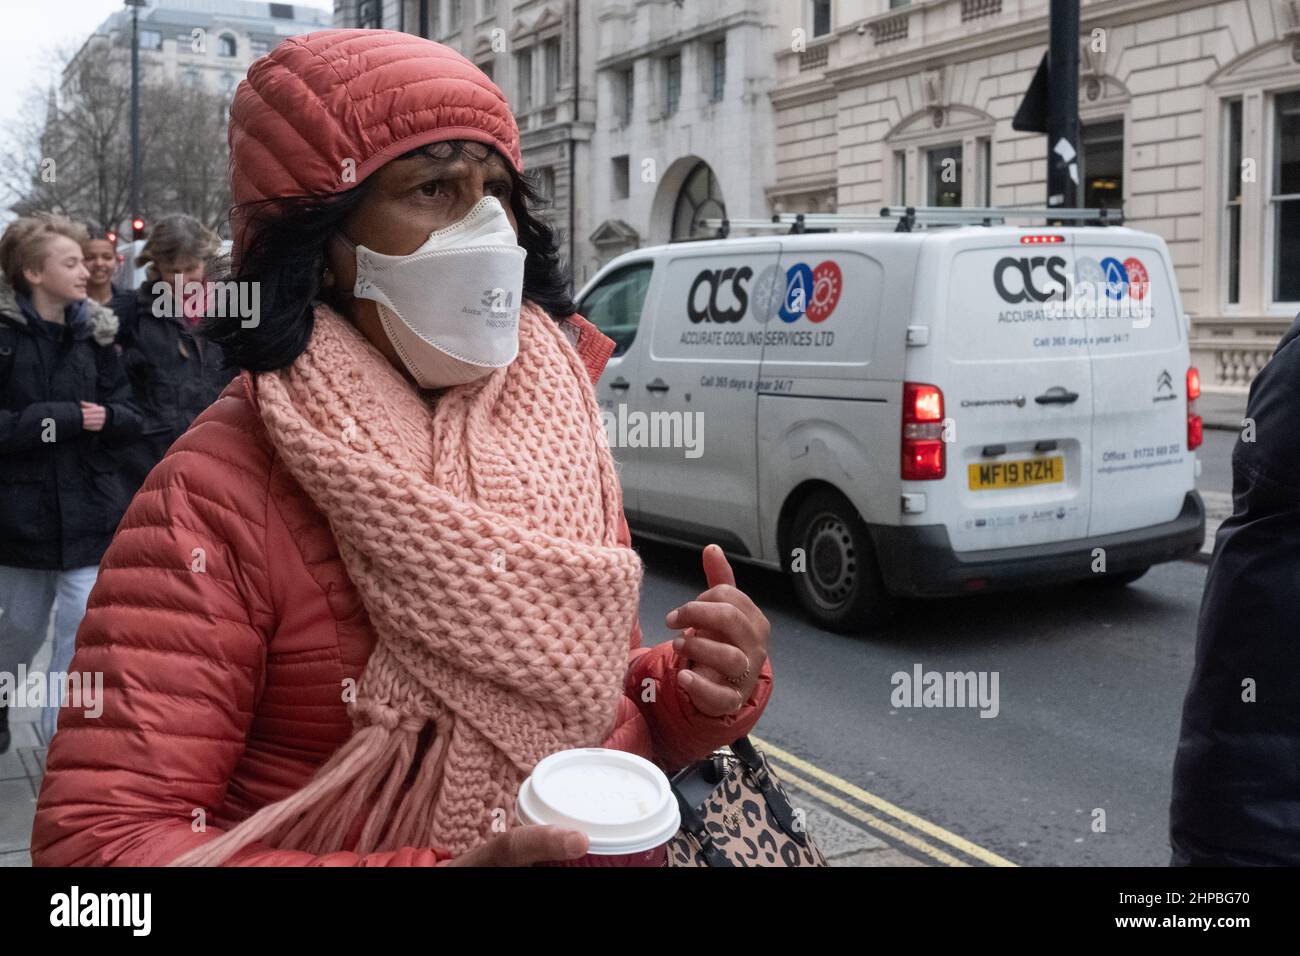 Donna nera che indossa una maschera facciale 3M durante il Covid 19 Pandemic sulle strade di Londra Foto Stock